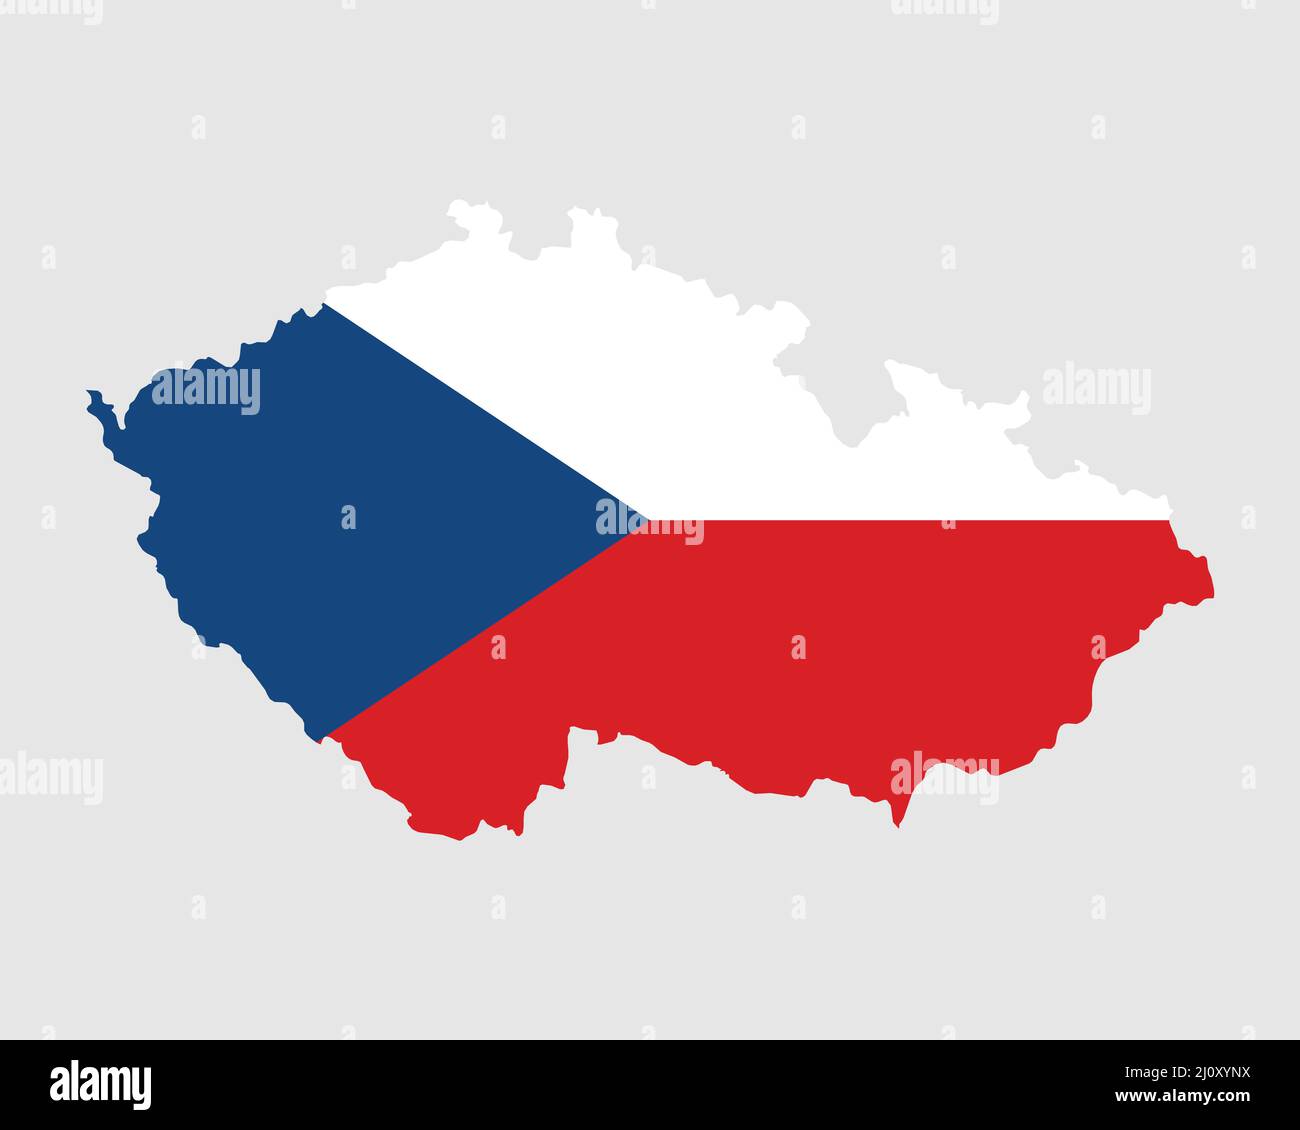 Bandiera della mappa della Repubblica Ceca. Mappa della Repubblica Ceca con la bandiera ceca. Illustrazione vettoriale. Illustrazione Vettoriale